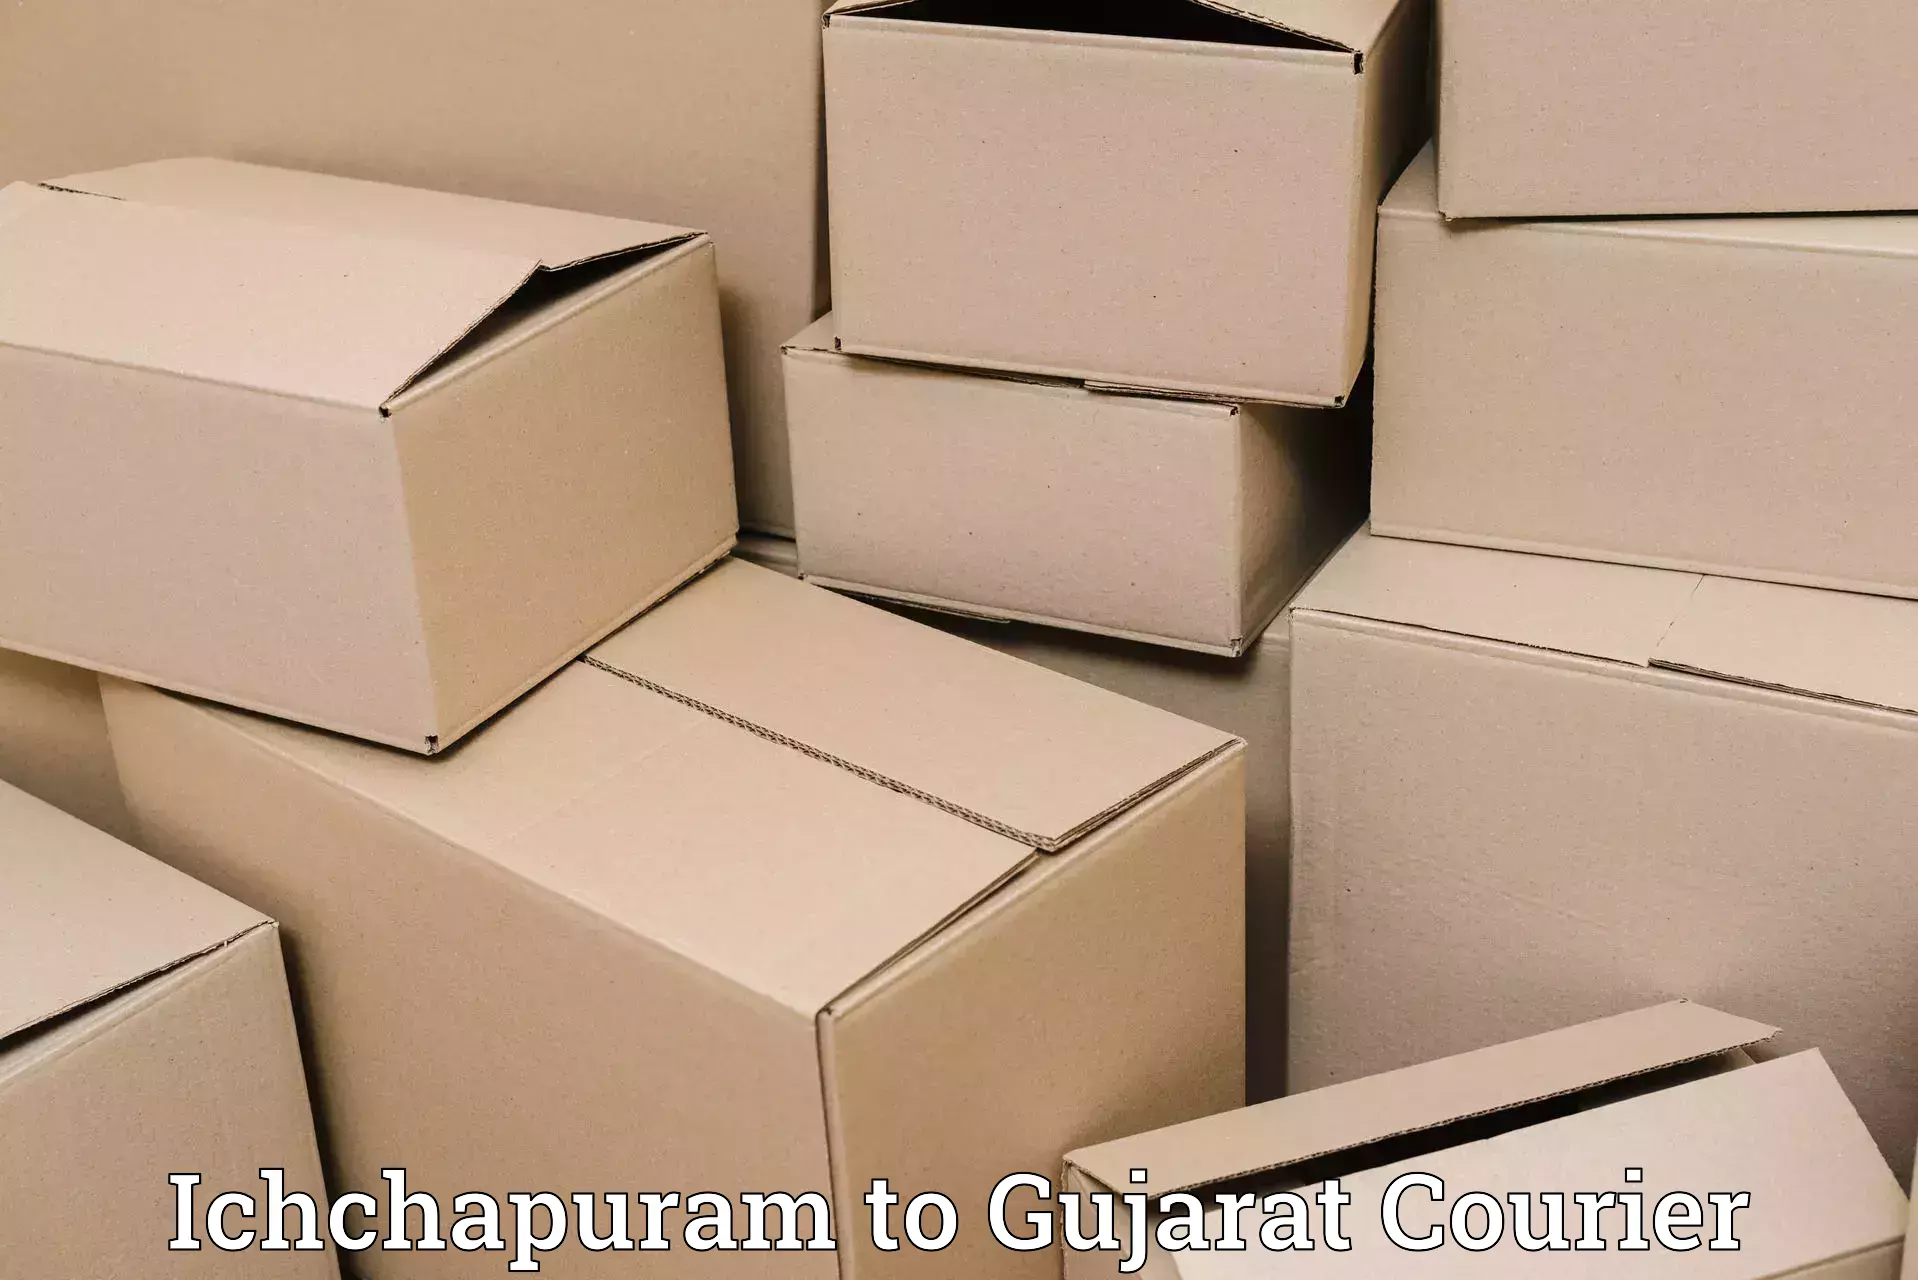 Global logistics network in Ichchapuram to Harij